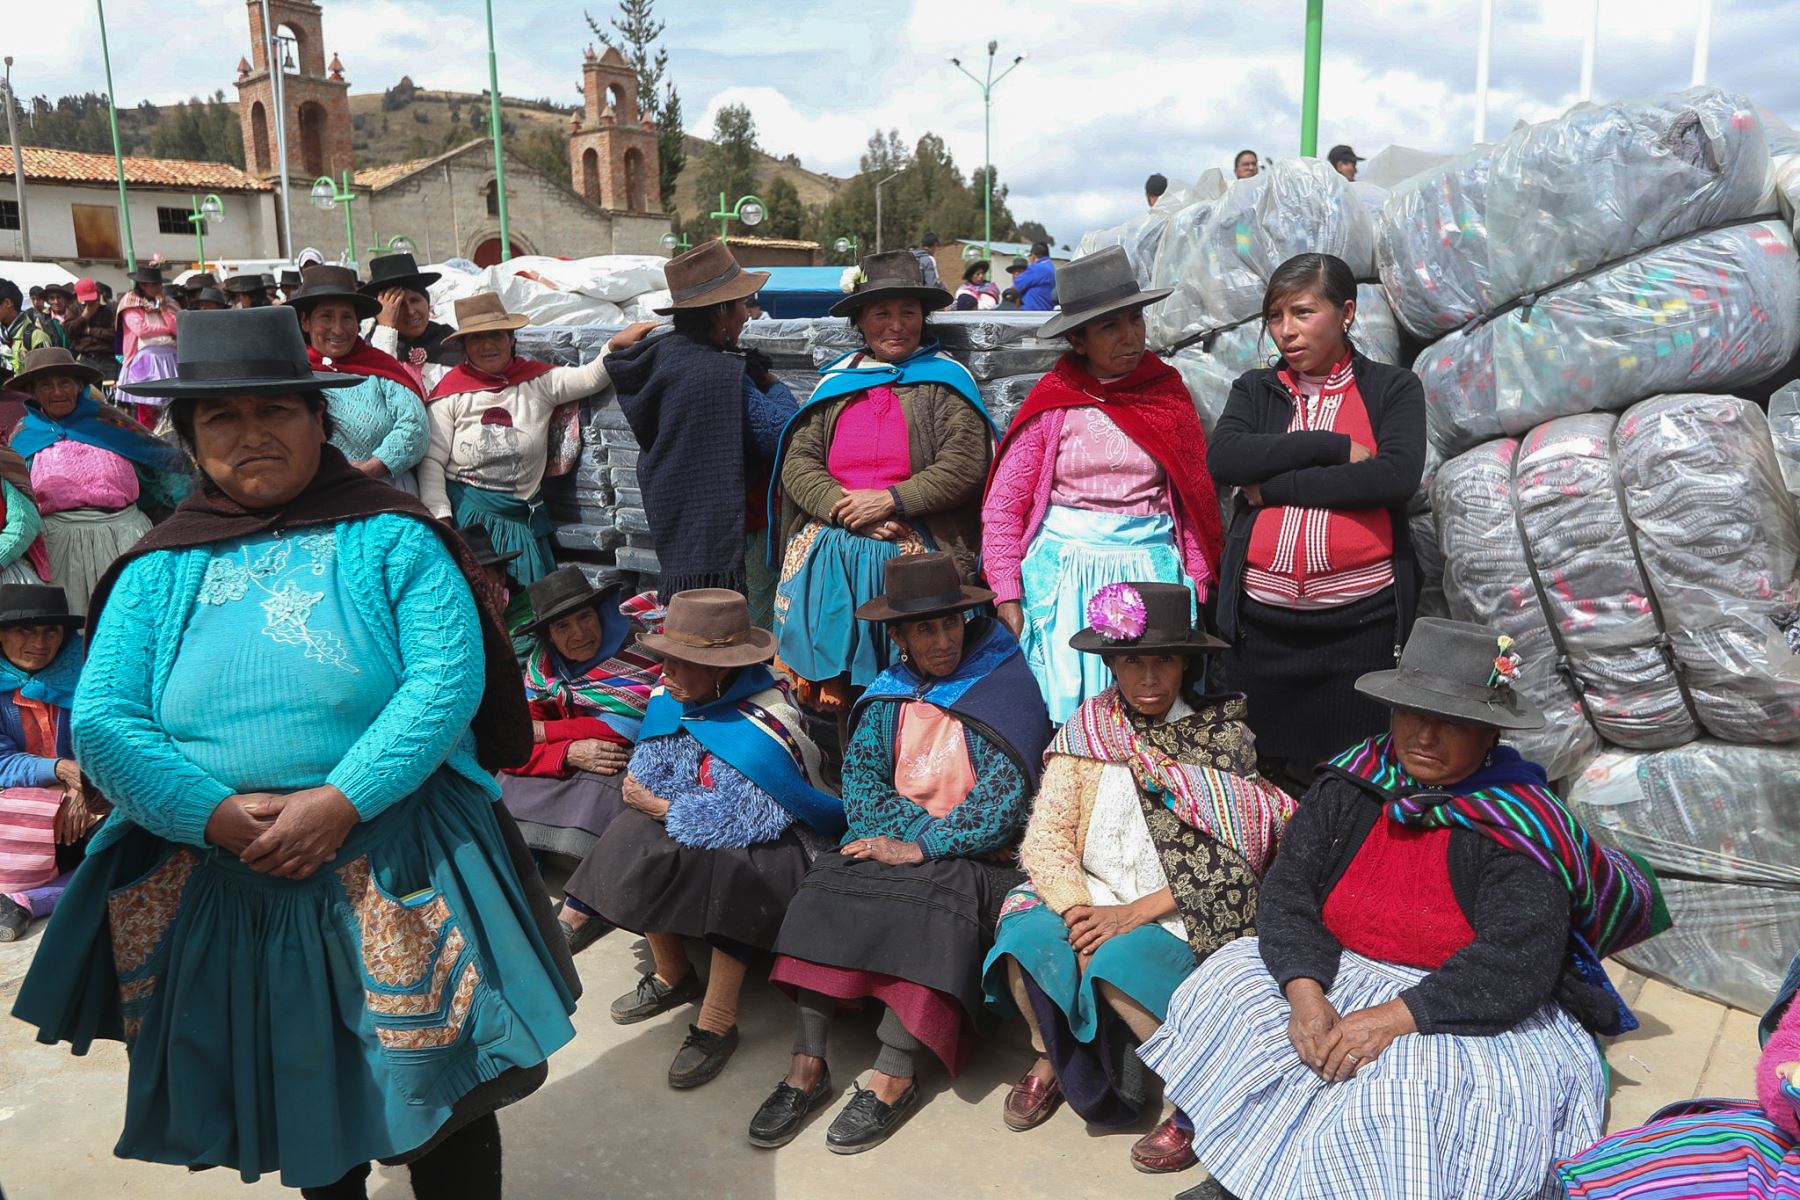 En el marco de declaratoria de emergencia en 55 distritos por heladas y friaje, el ministro José Huerta, junto al Cmdte Gral del ejercito, llega al centro poblado de Chanquil en Huancavelica, para entregar ayuda humanitaria a afectados. Foto: ANDINA/MINDEF